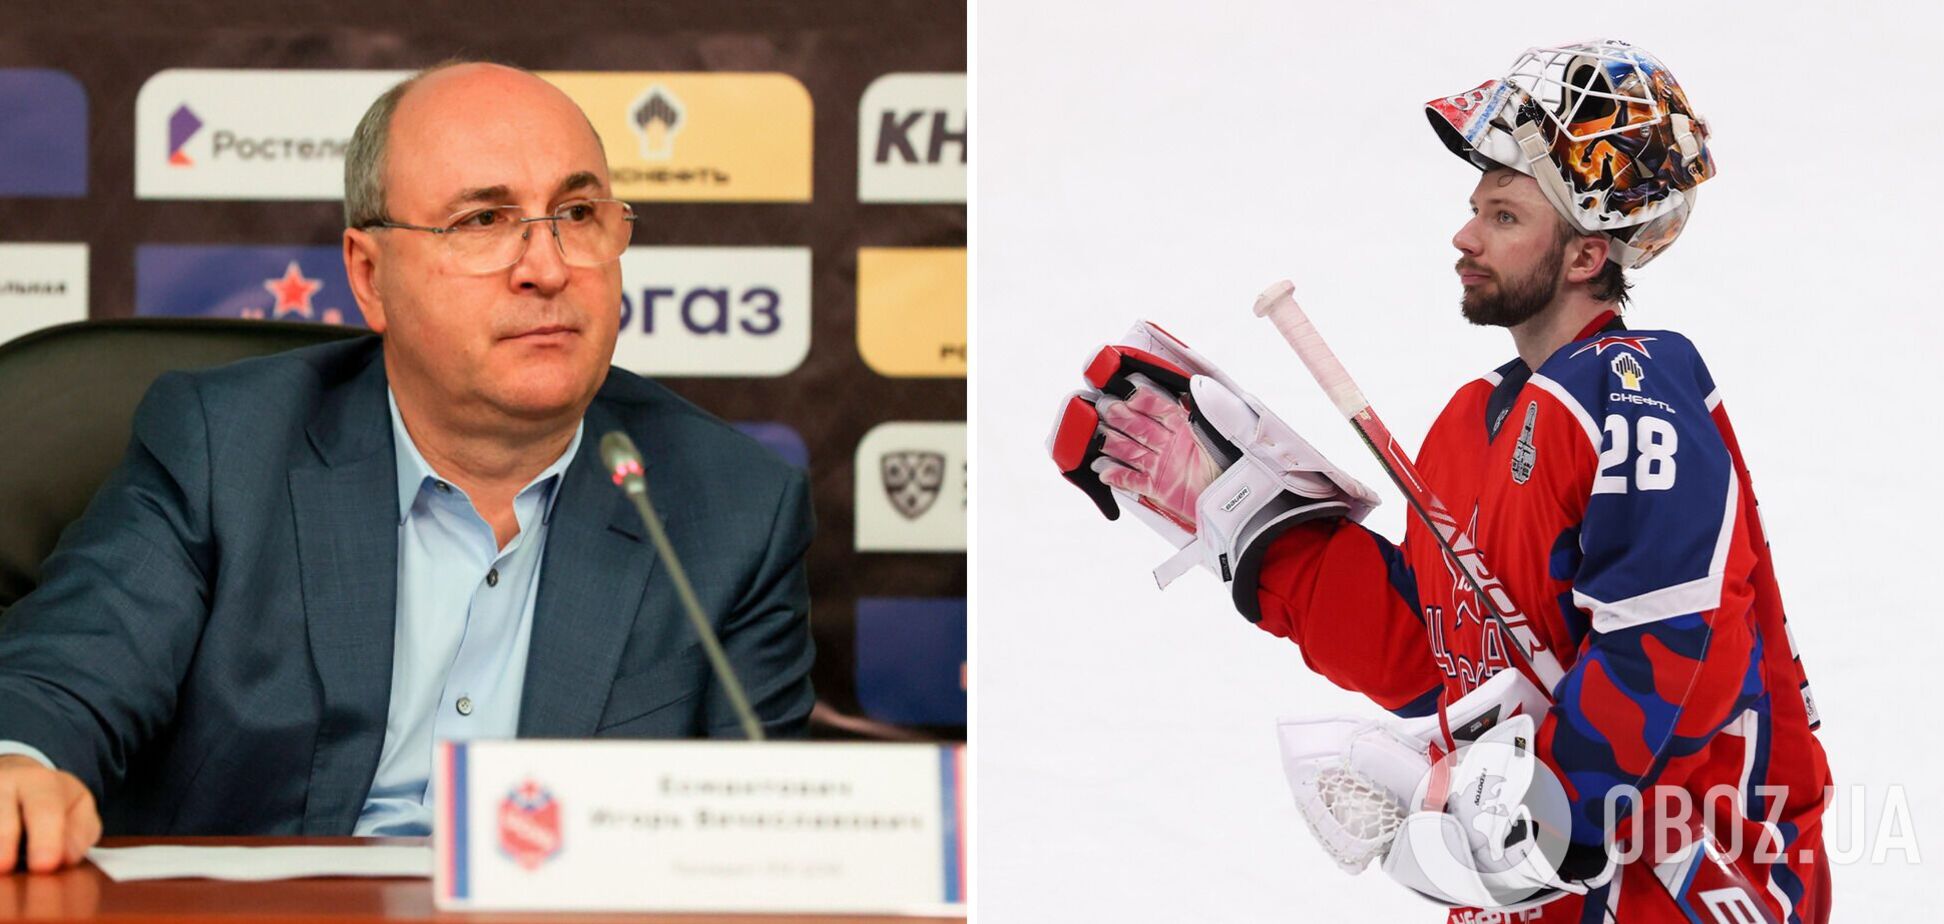 Скандал в мировом хоккее: Россия снова наплевала на международные правила